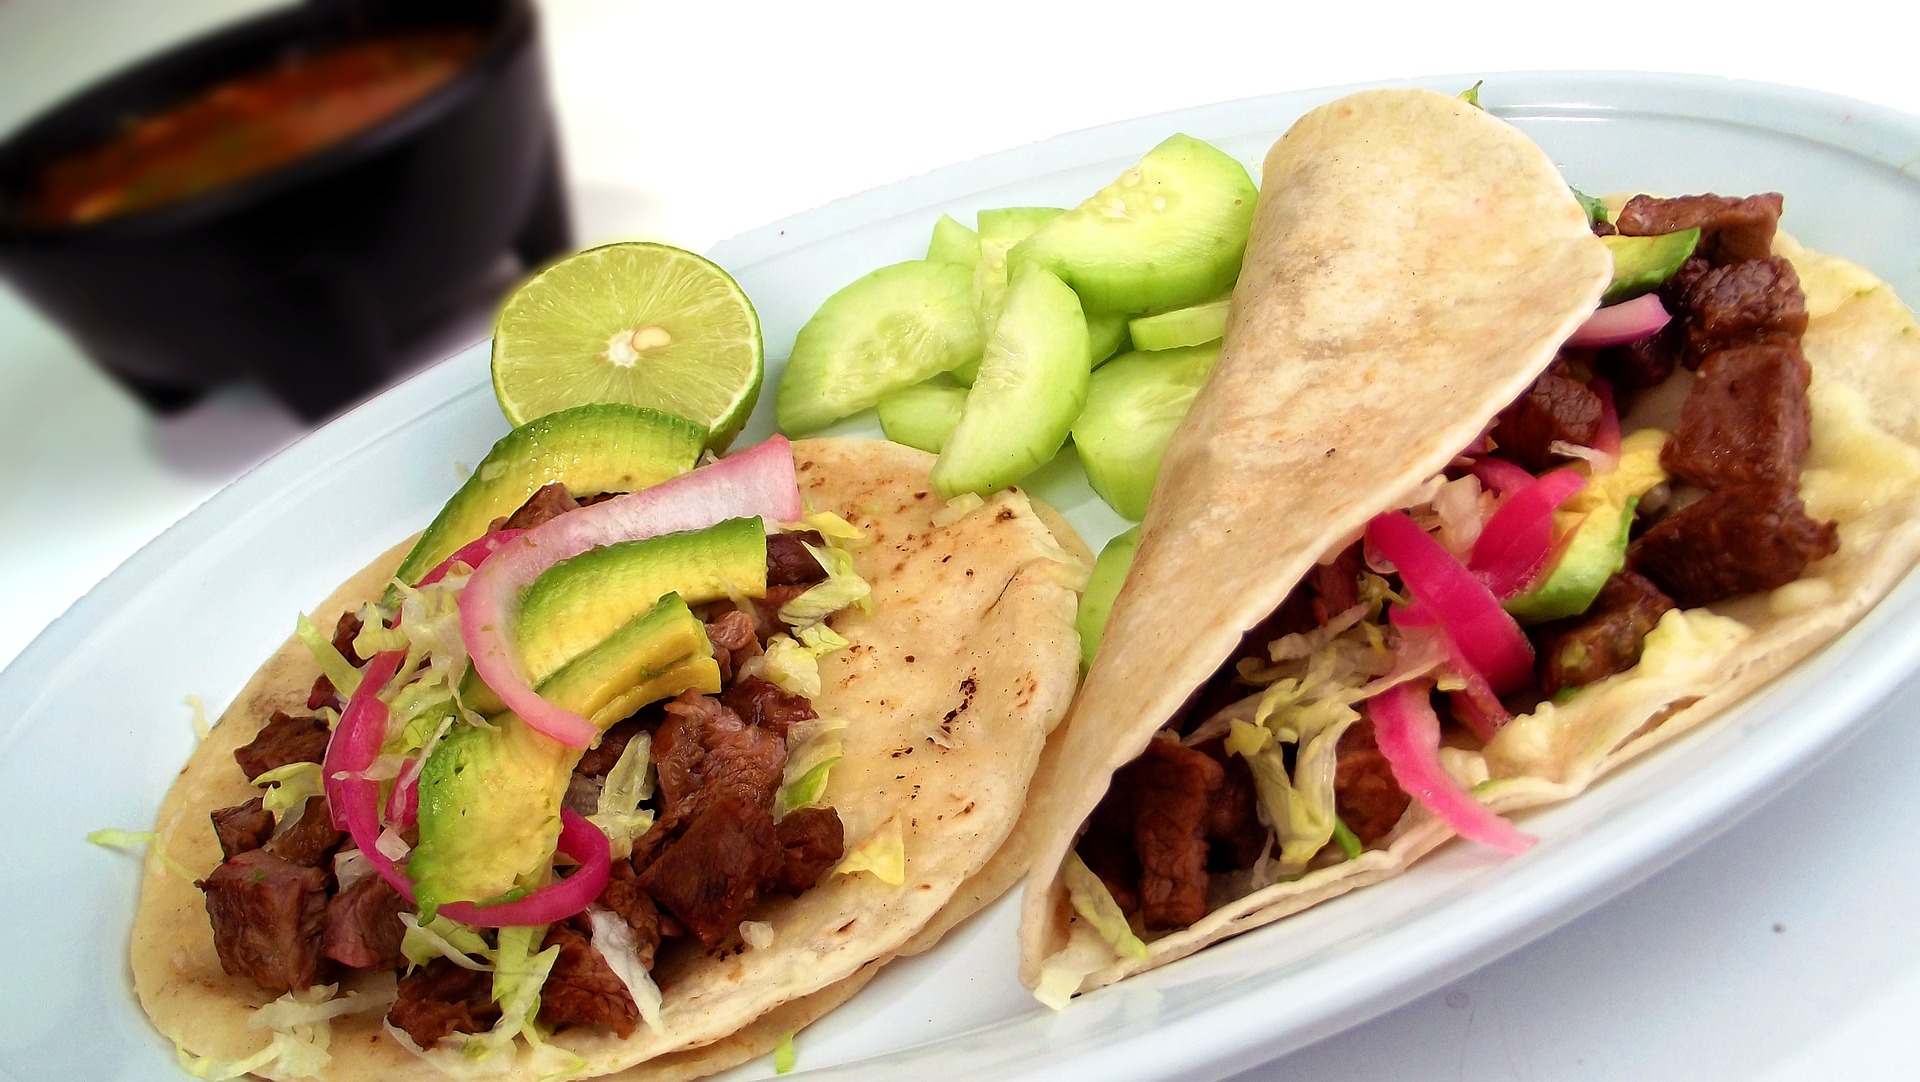 ¡No podían faltar los taquitos! 4 platillos mexicanos en el top 10 de lo mejor calificado en Taste Atlas